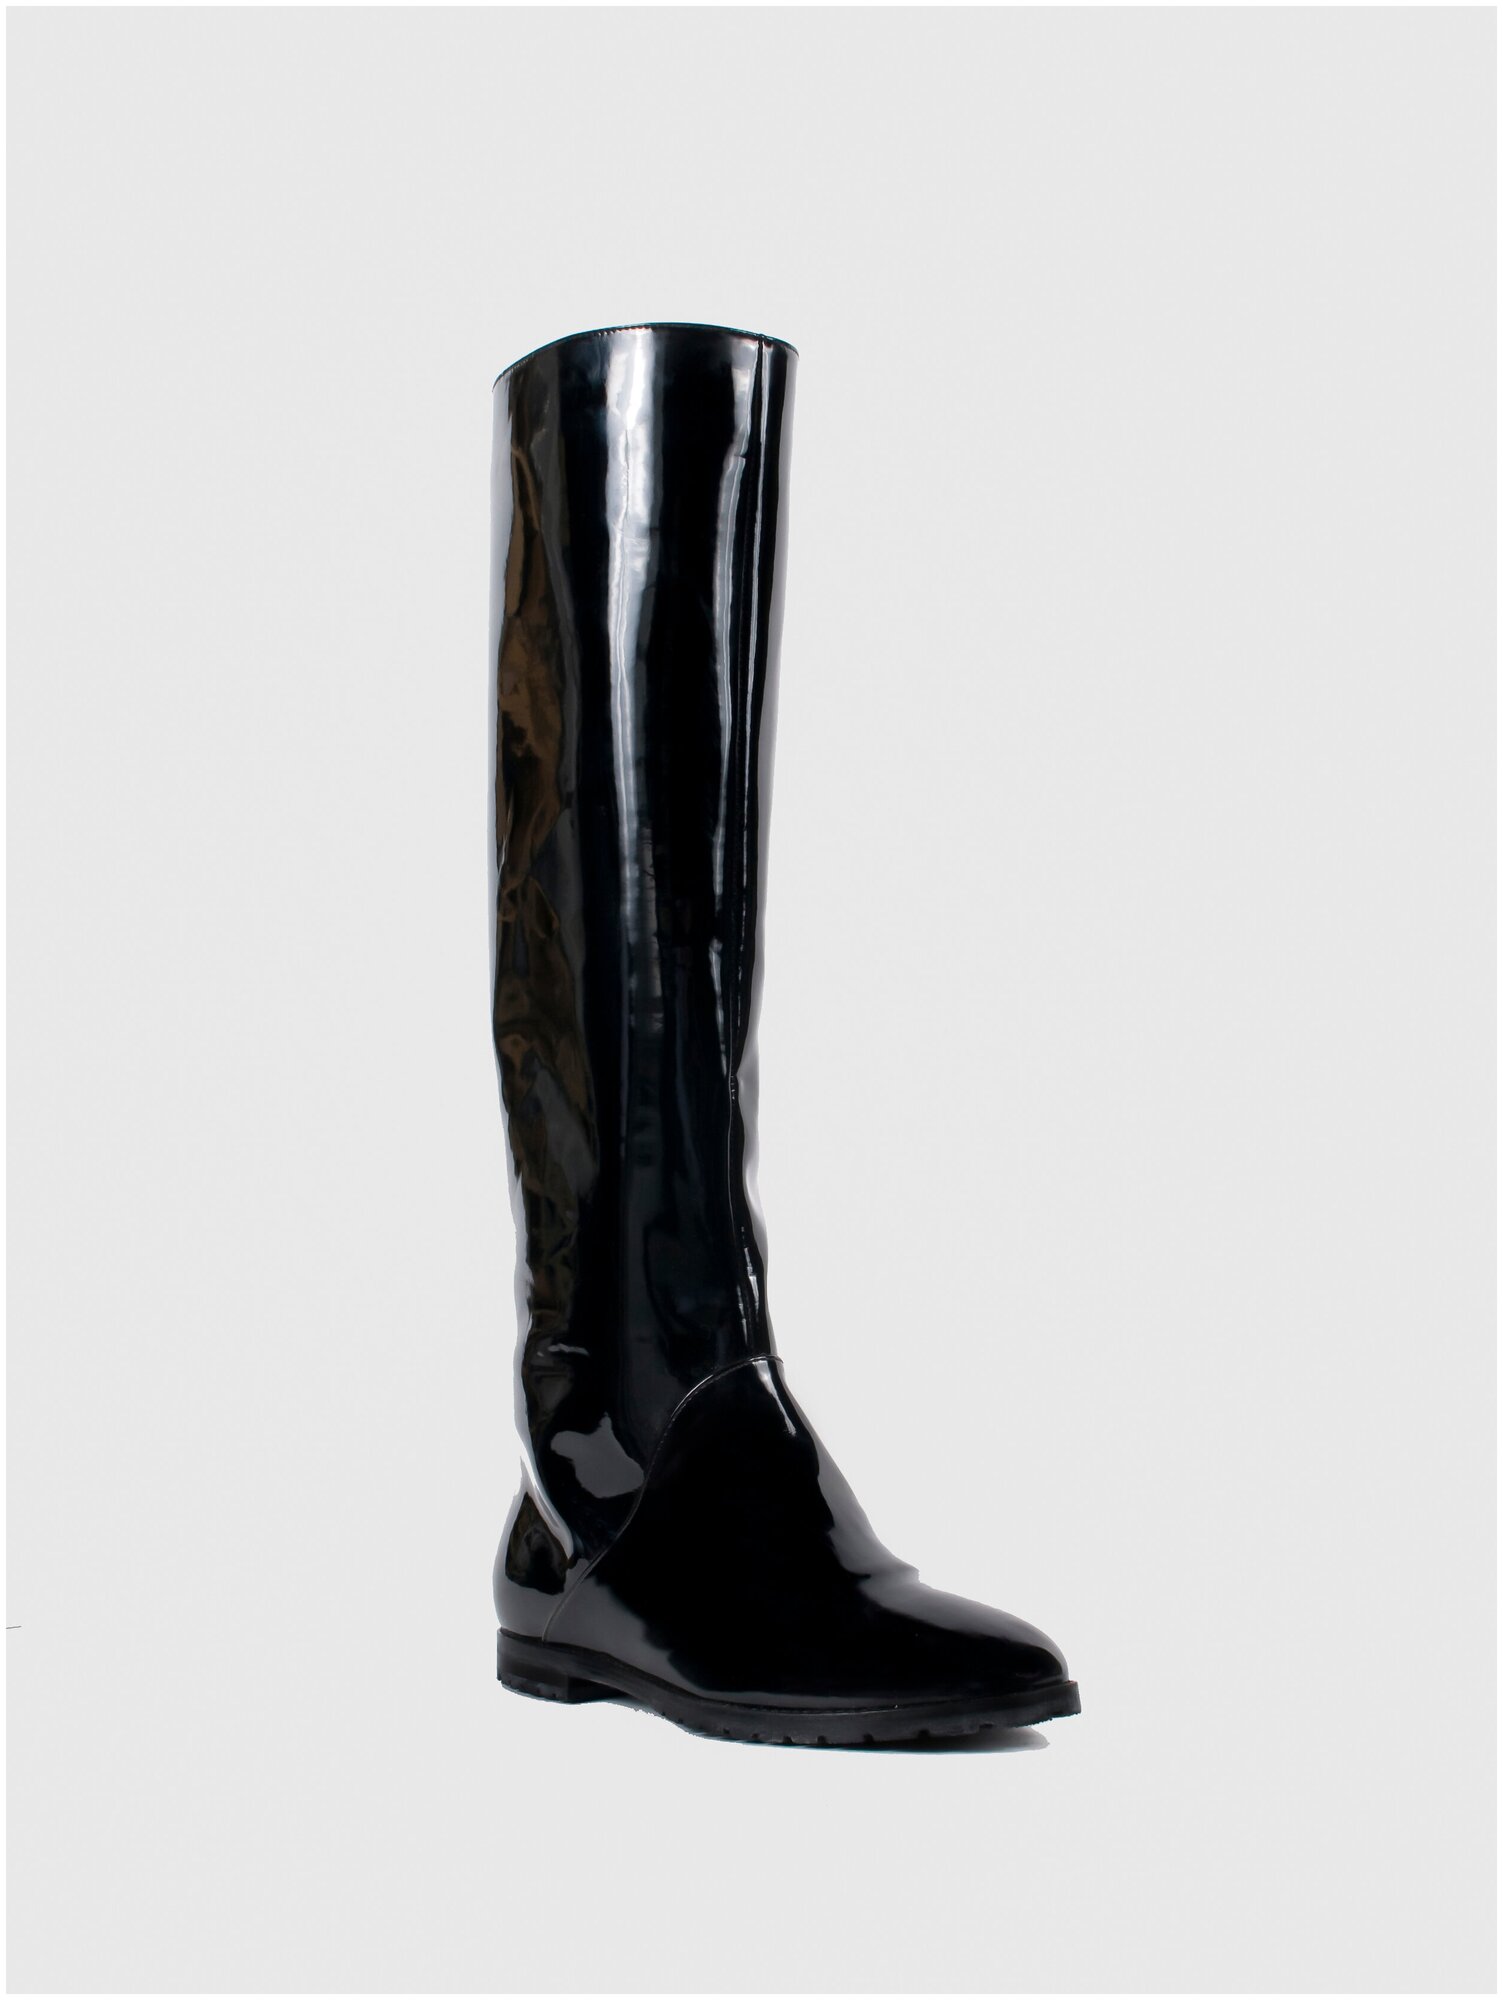 Женская обувь E-SKYE  сапоги модель Трубы лакированная кожа черный цвет